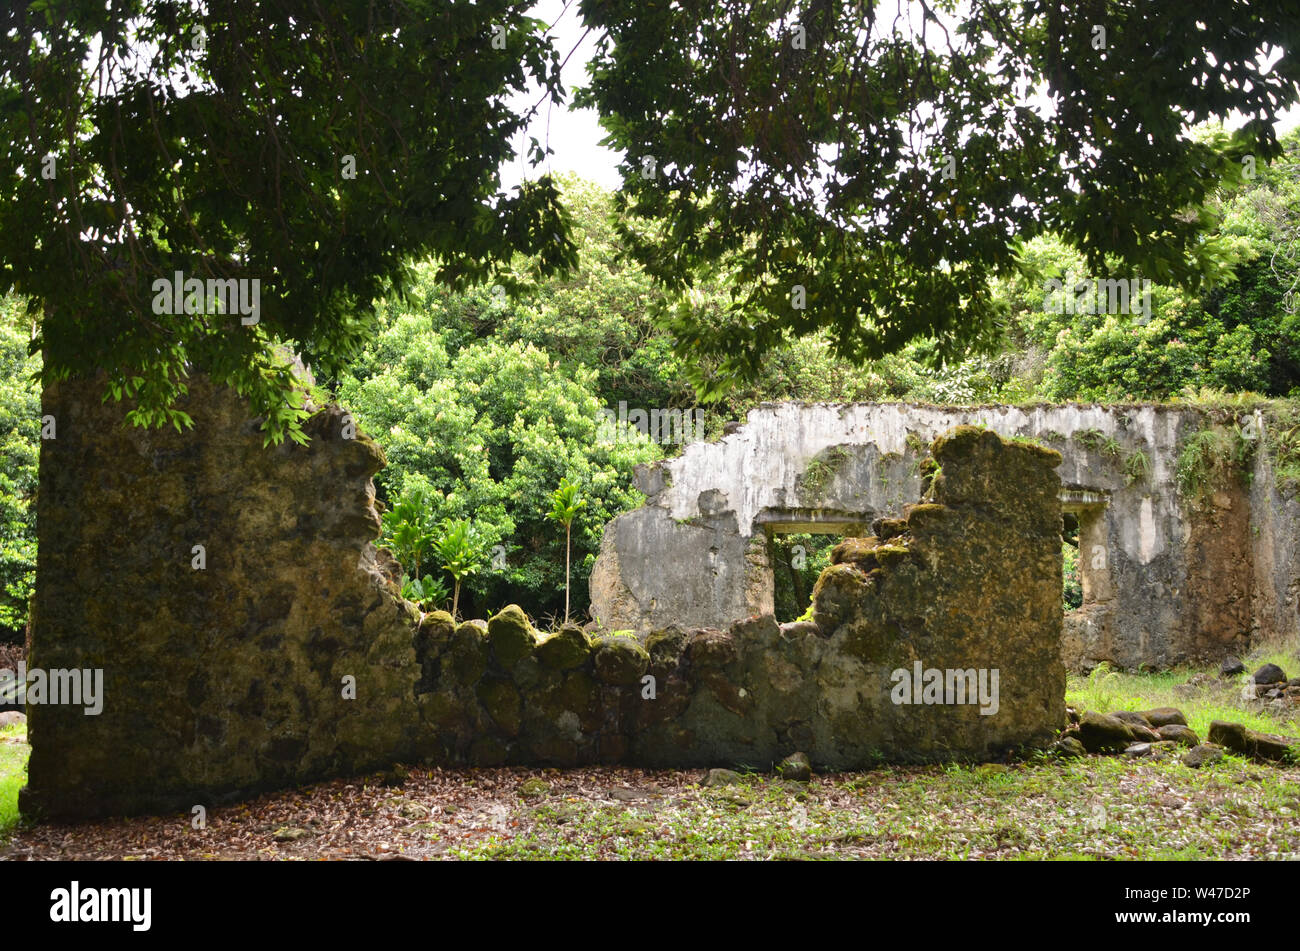 Rey Kamehaeha III palacio de verano, las ruinas sagradas de Hawaii Foto de stock